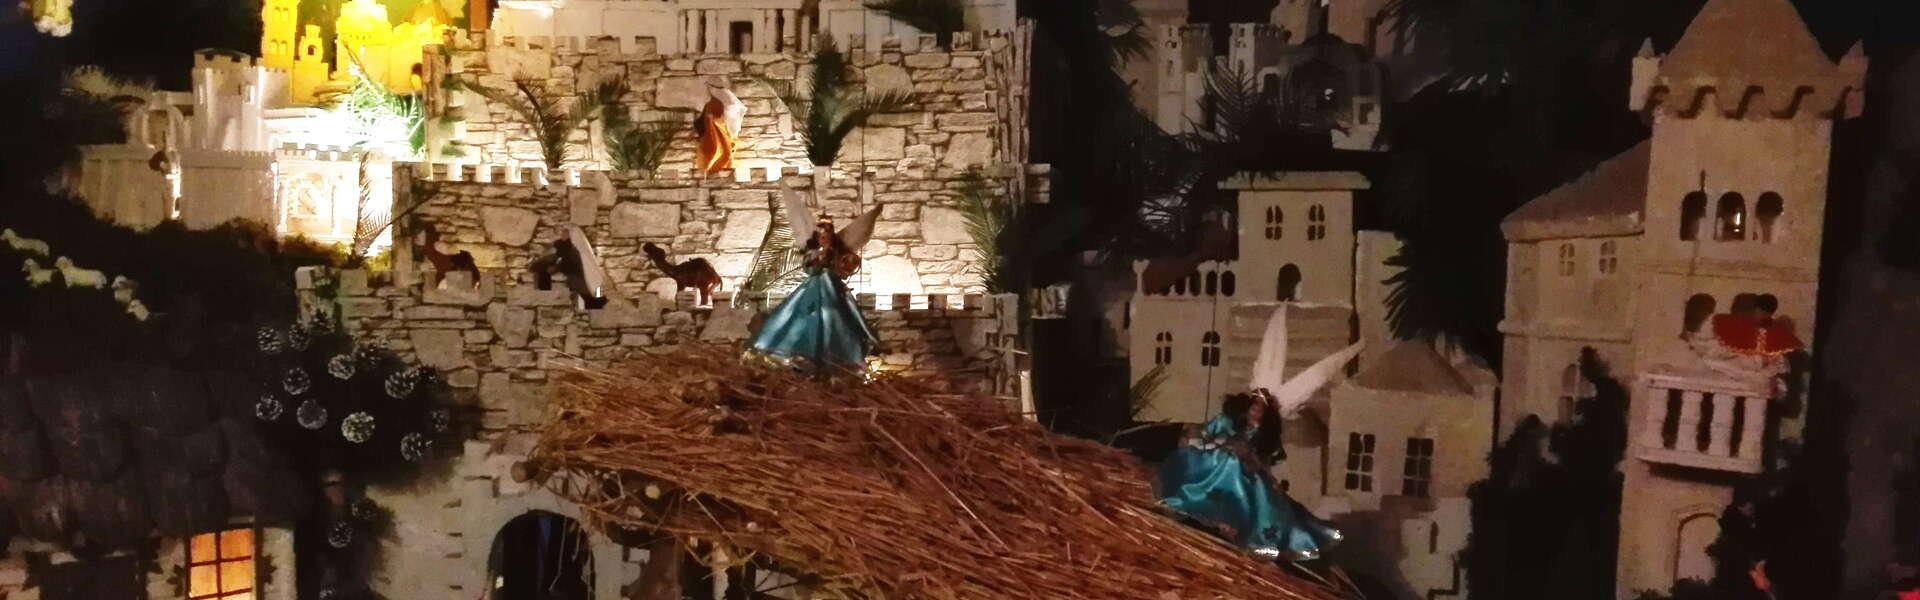 Widok na szopkę bożonarodzeniową z figurkami, aniołów, postaci Maryii, Józefa i Pana Jezusa.